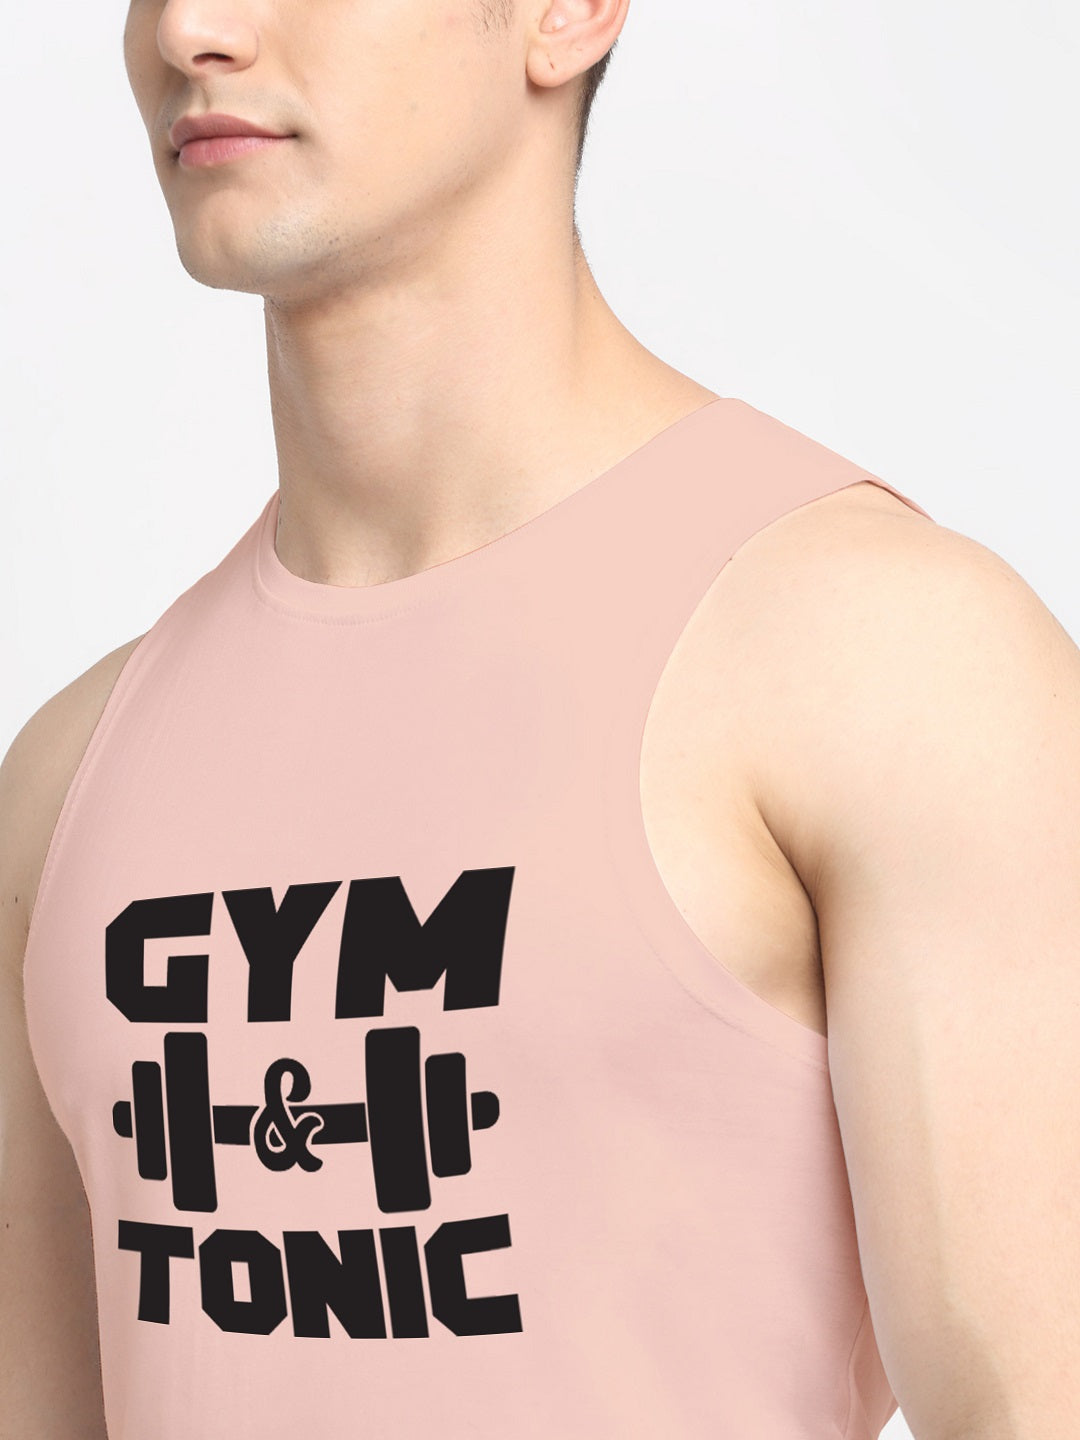 Men Gym Tonic Printed Cotton Training Vest - Friskers